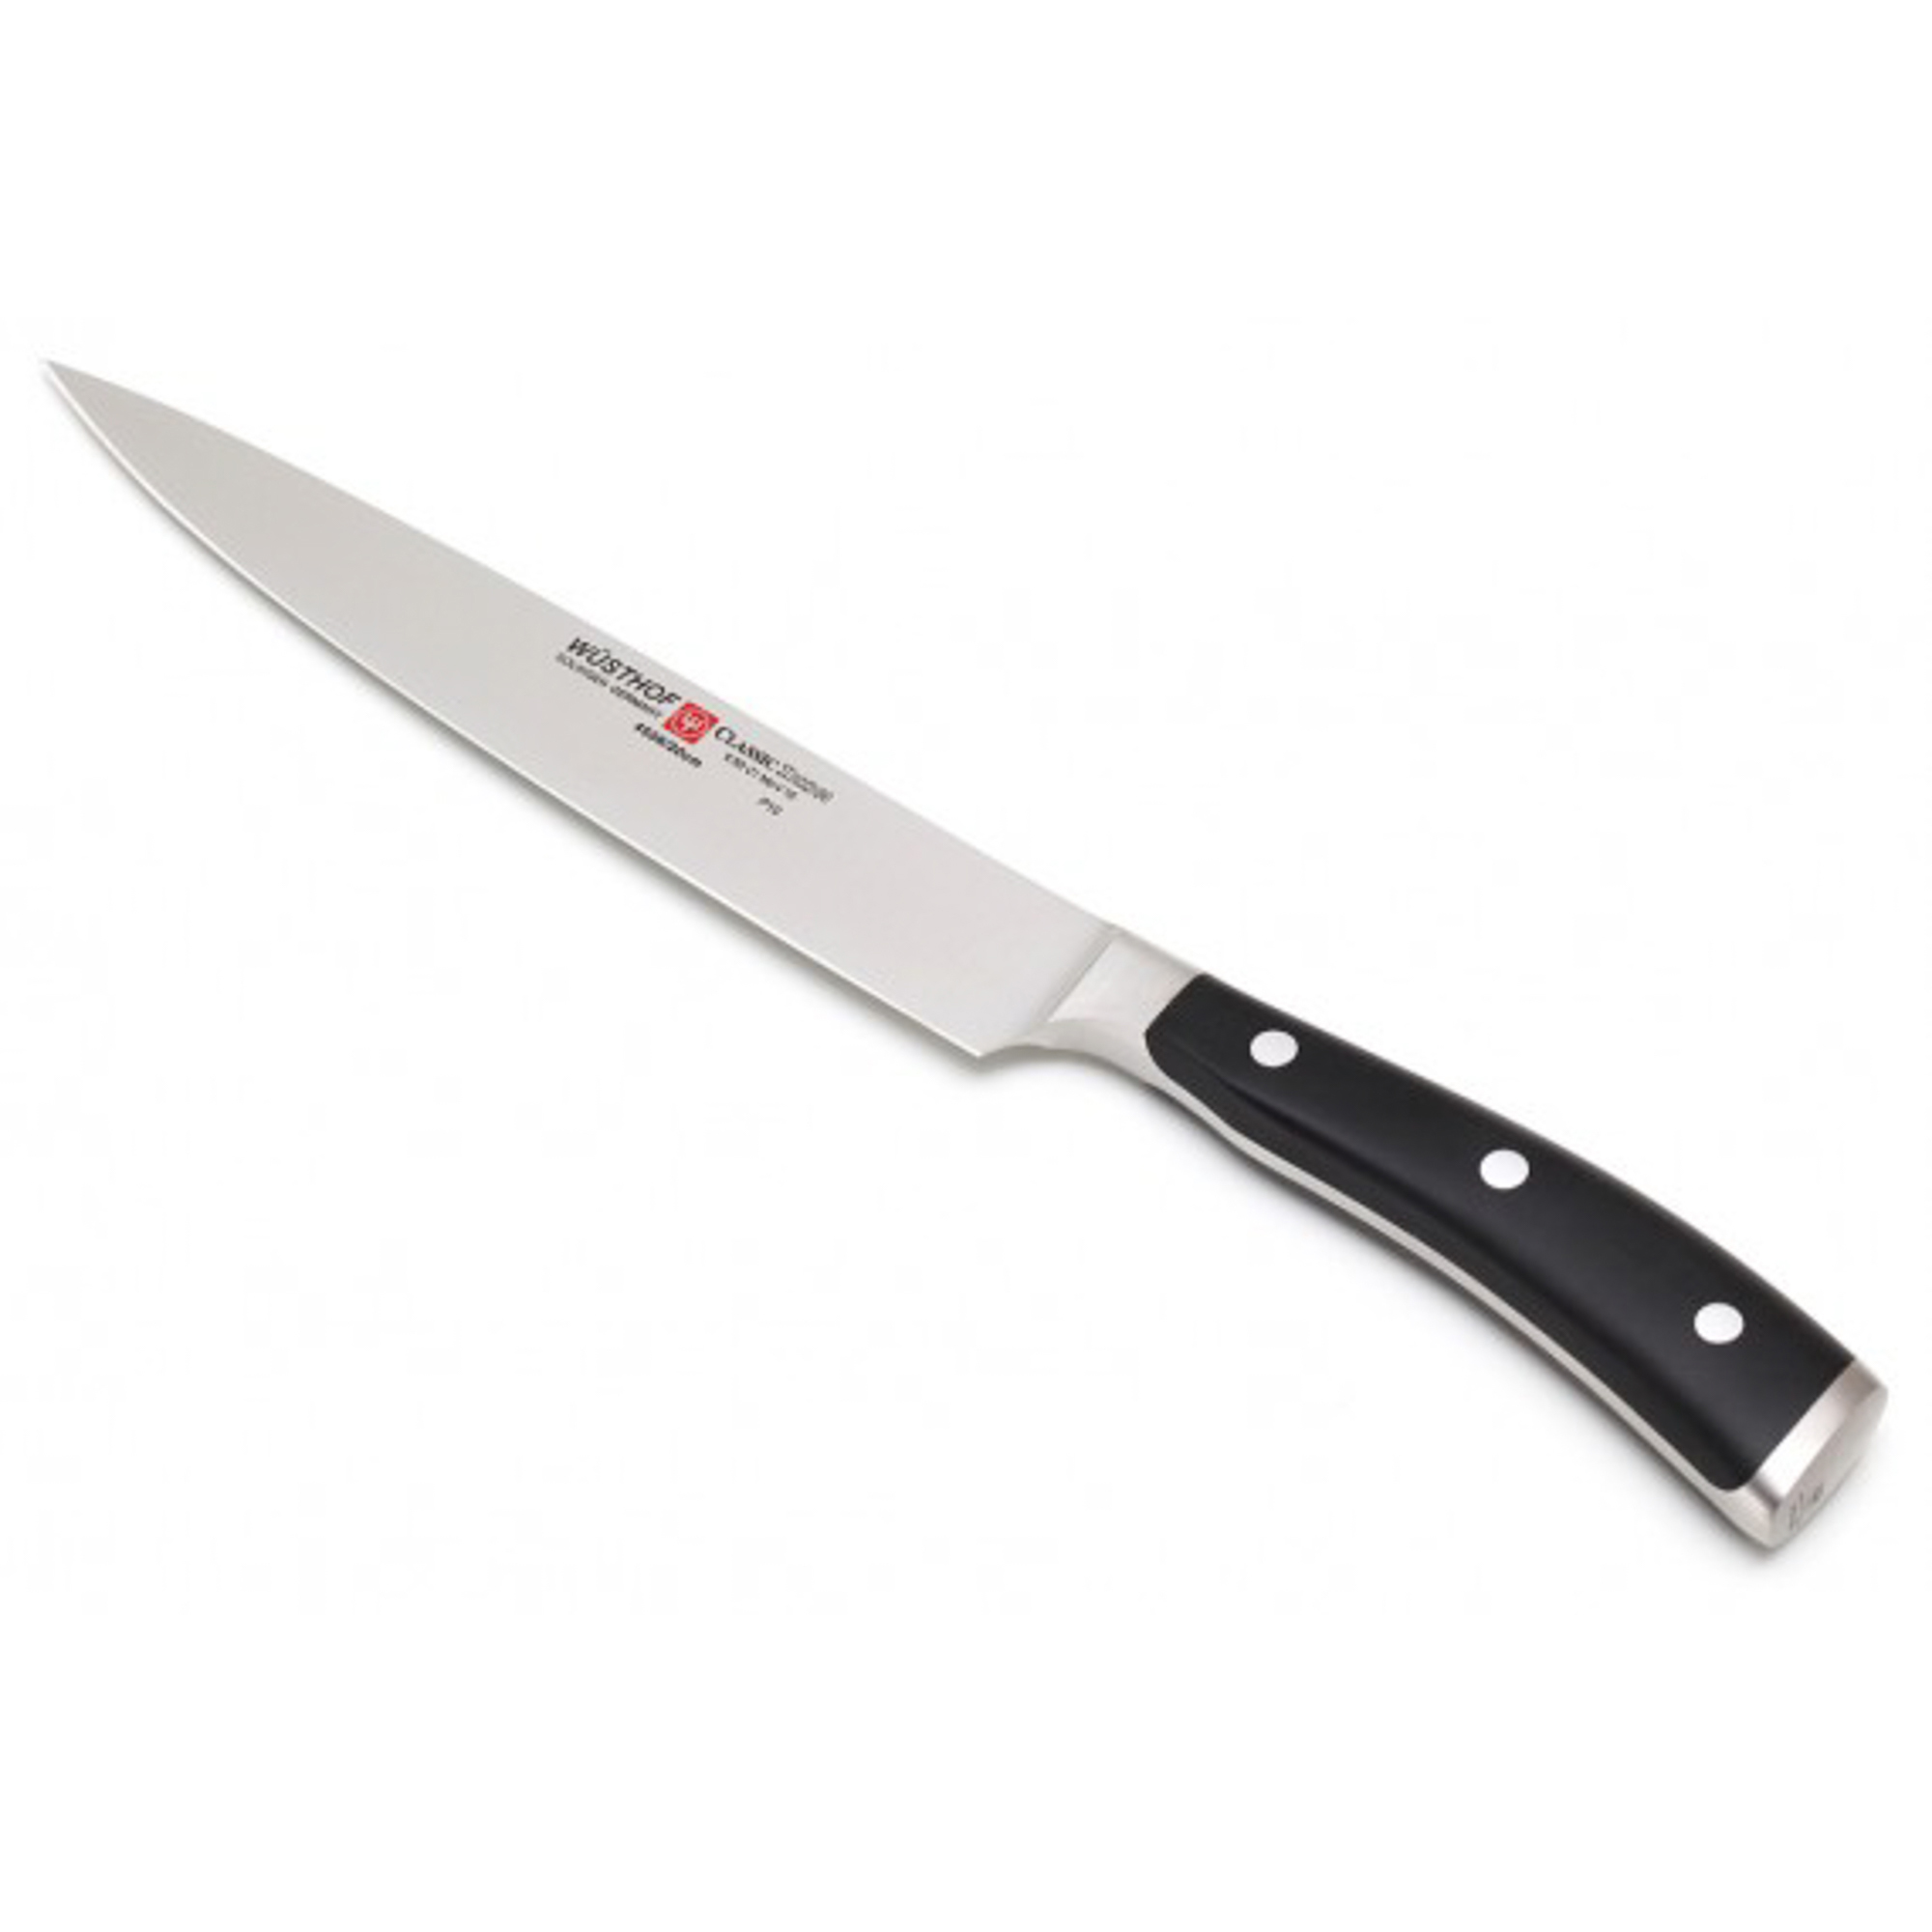 Нож для резки мяса 20 см Wusthoff classic ikon нож кухонный для резки мяса 20 см wuesthof classic 4522 20